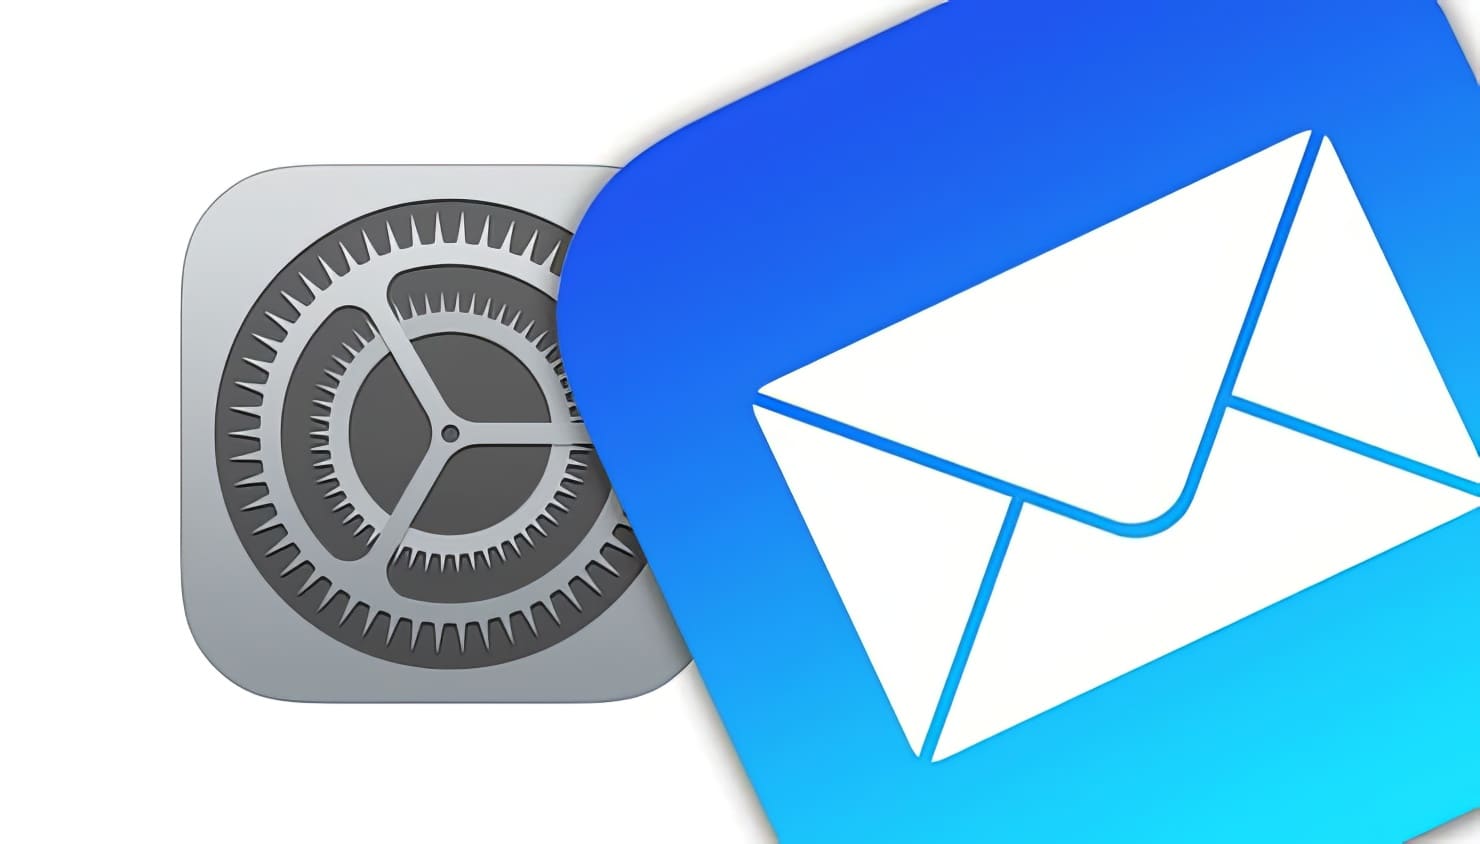 Черновики e-mail в приложении Почта на iPhone и iPad: как создавать, открывать и сворачивать